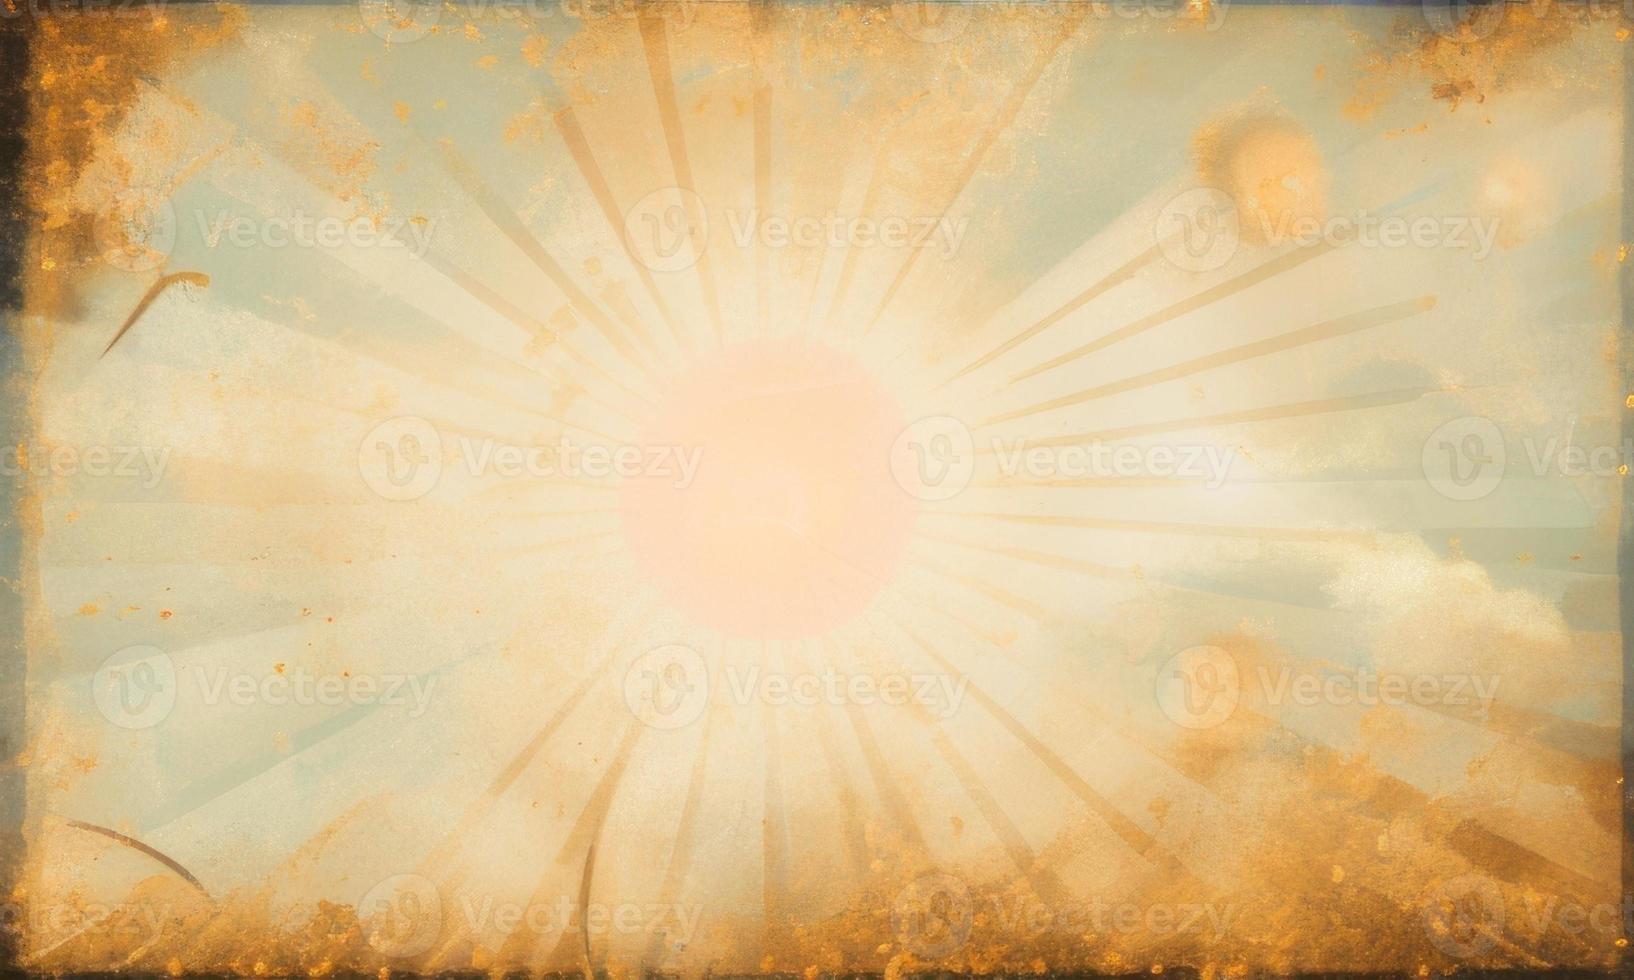 vintage sunburst background with rays photo